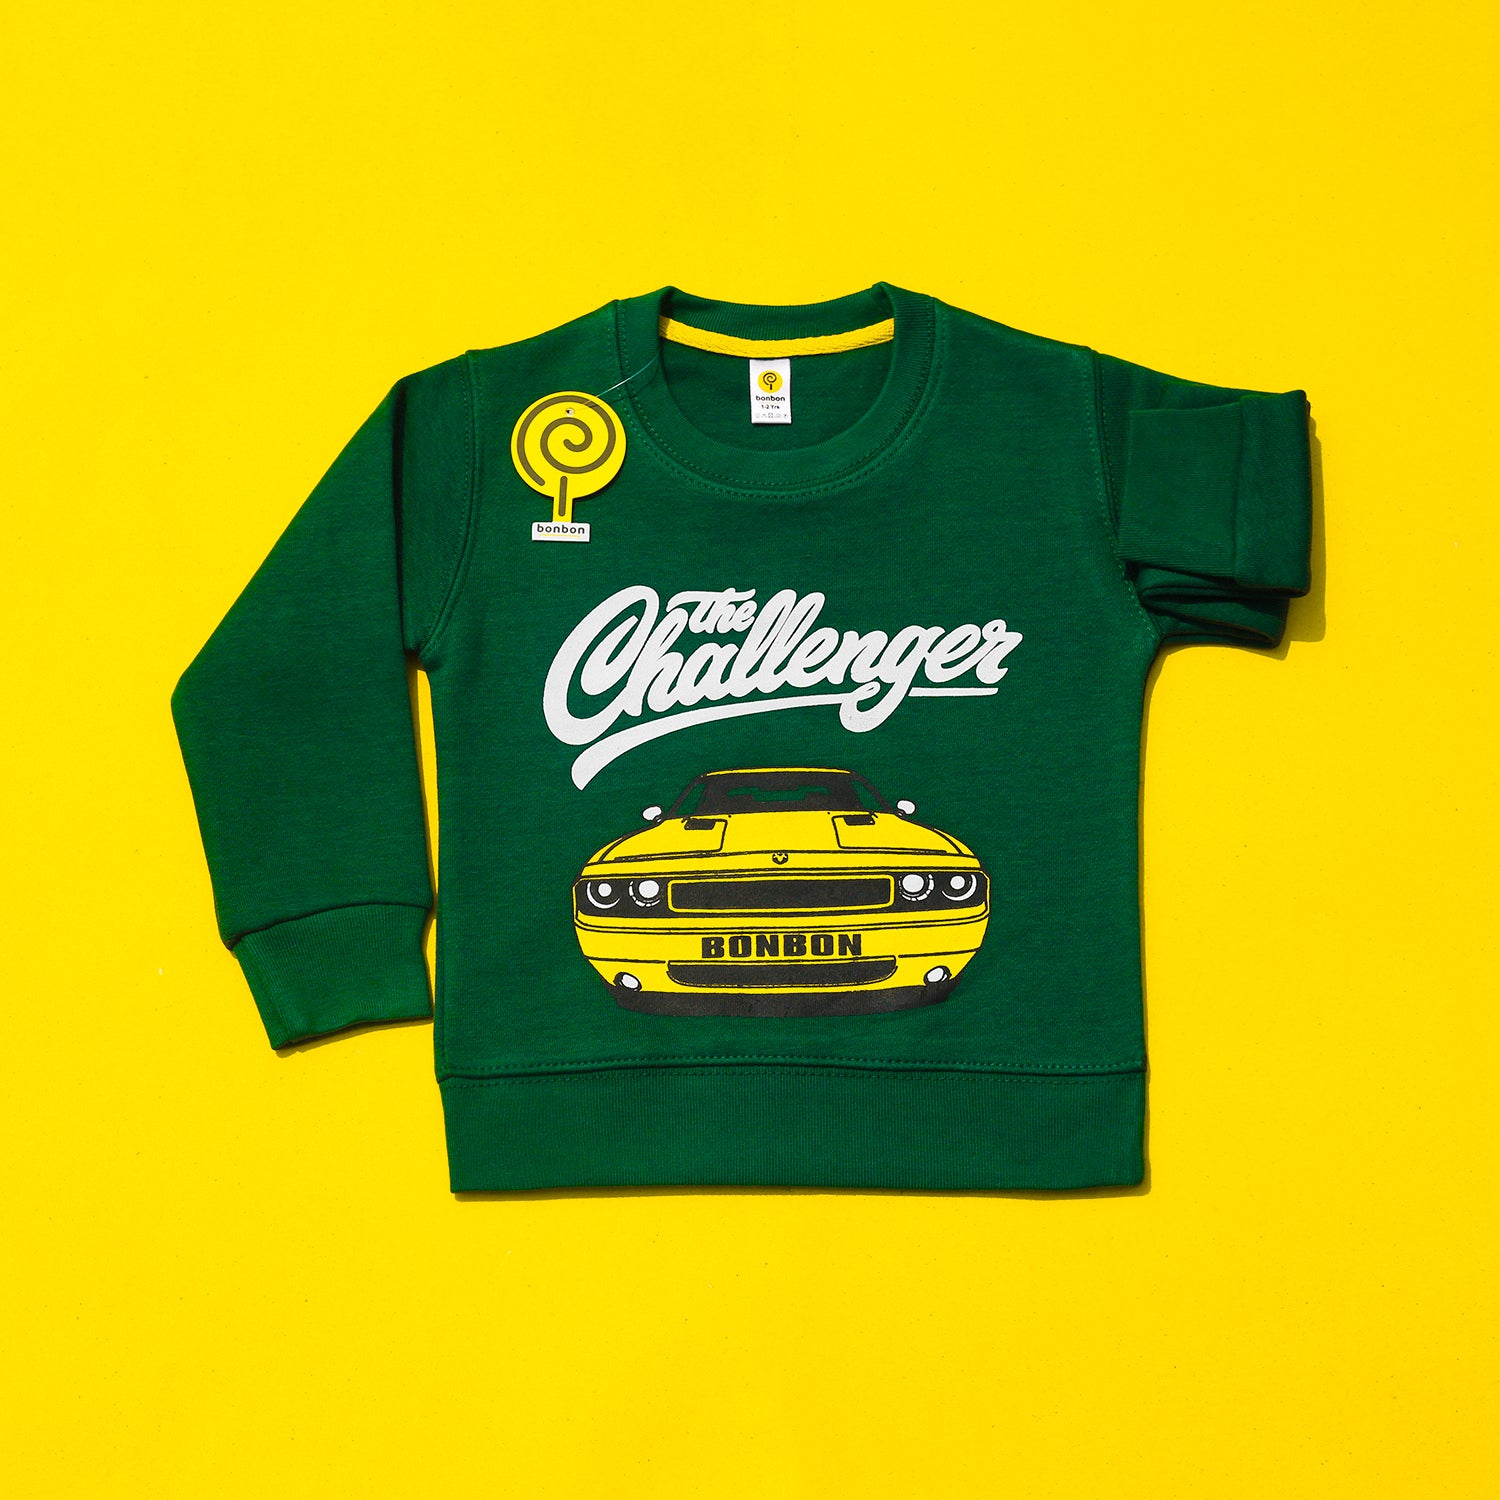 The Challenger Green Sweatshirt